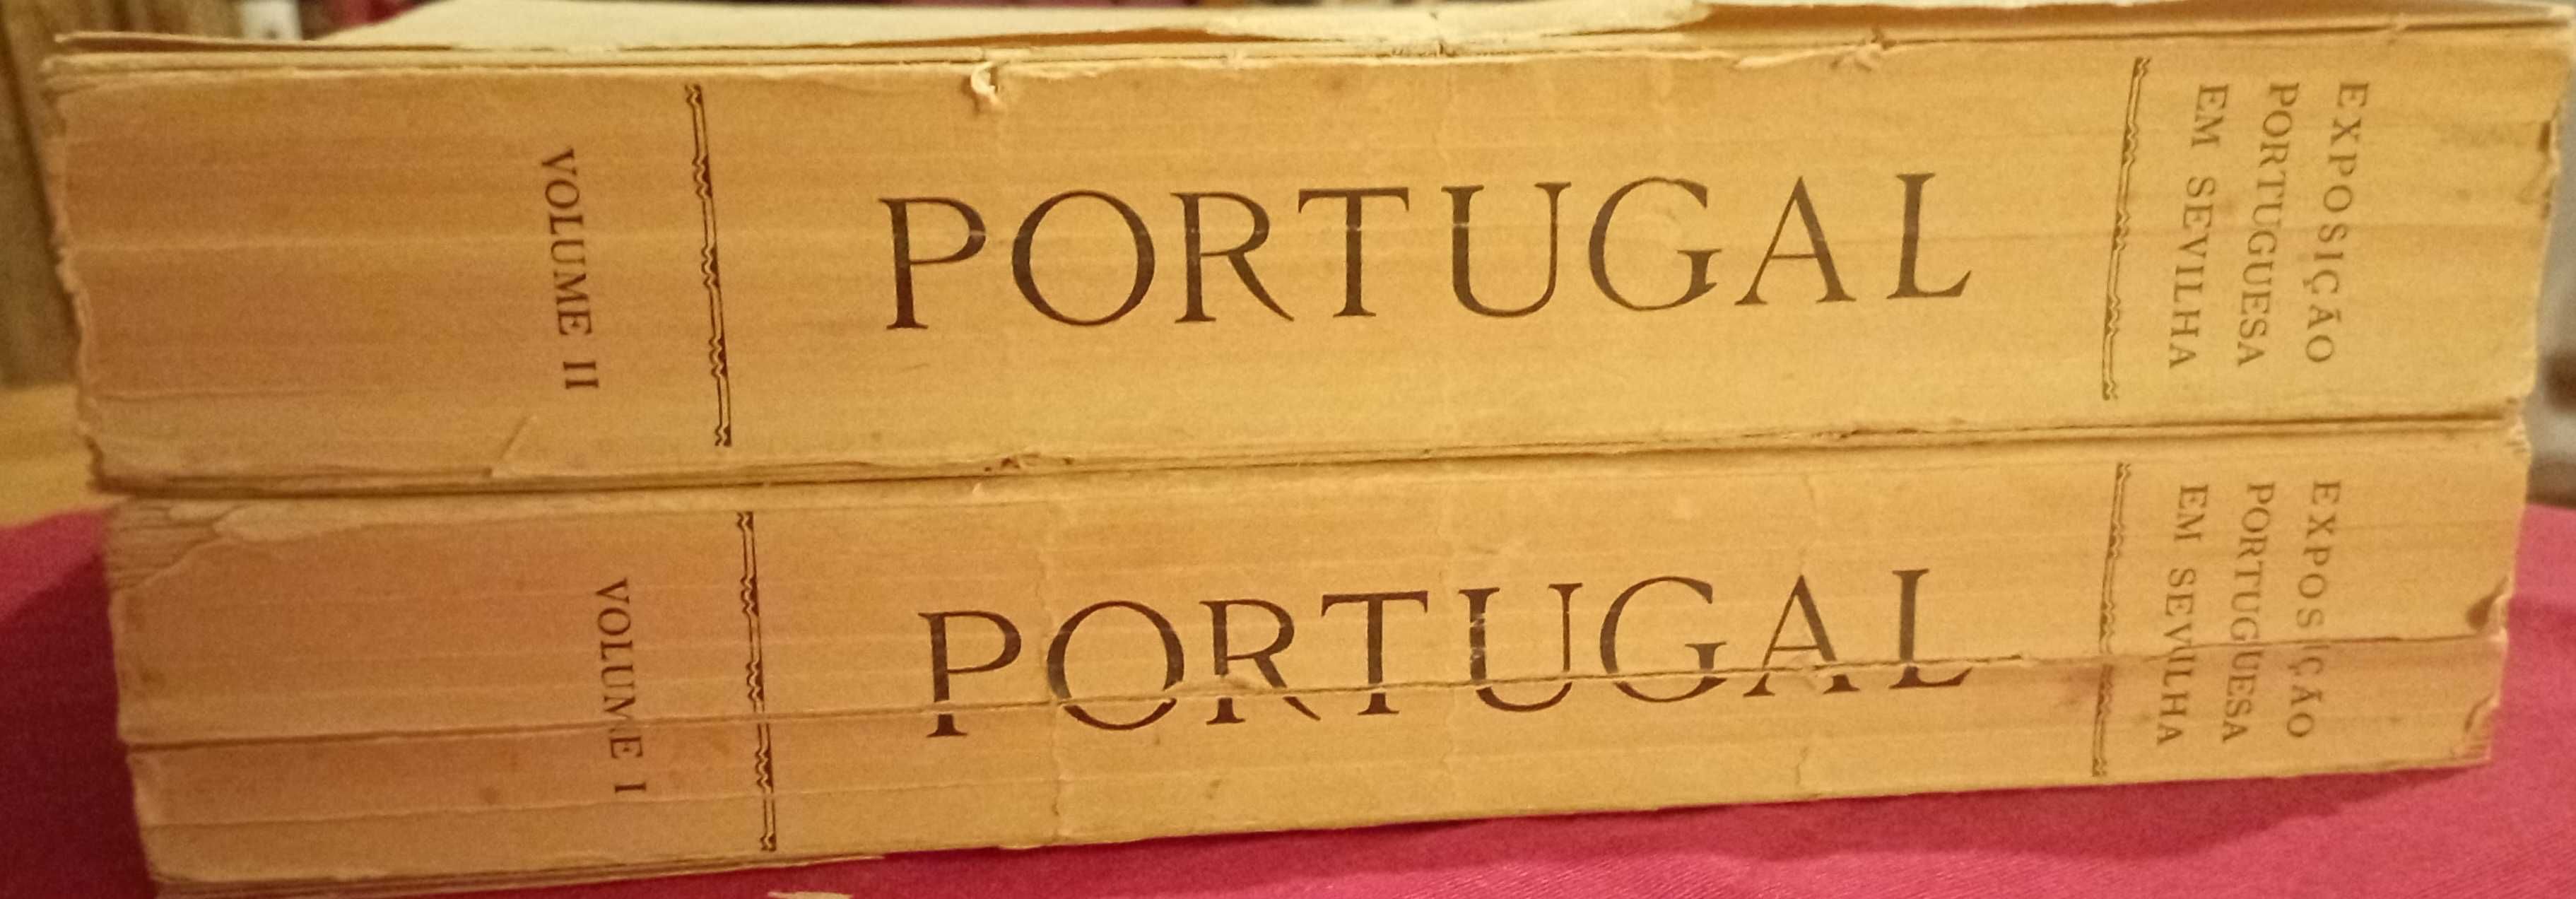 Portugal - Exposição portuguesa em Sevilha - 2 volumes